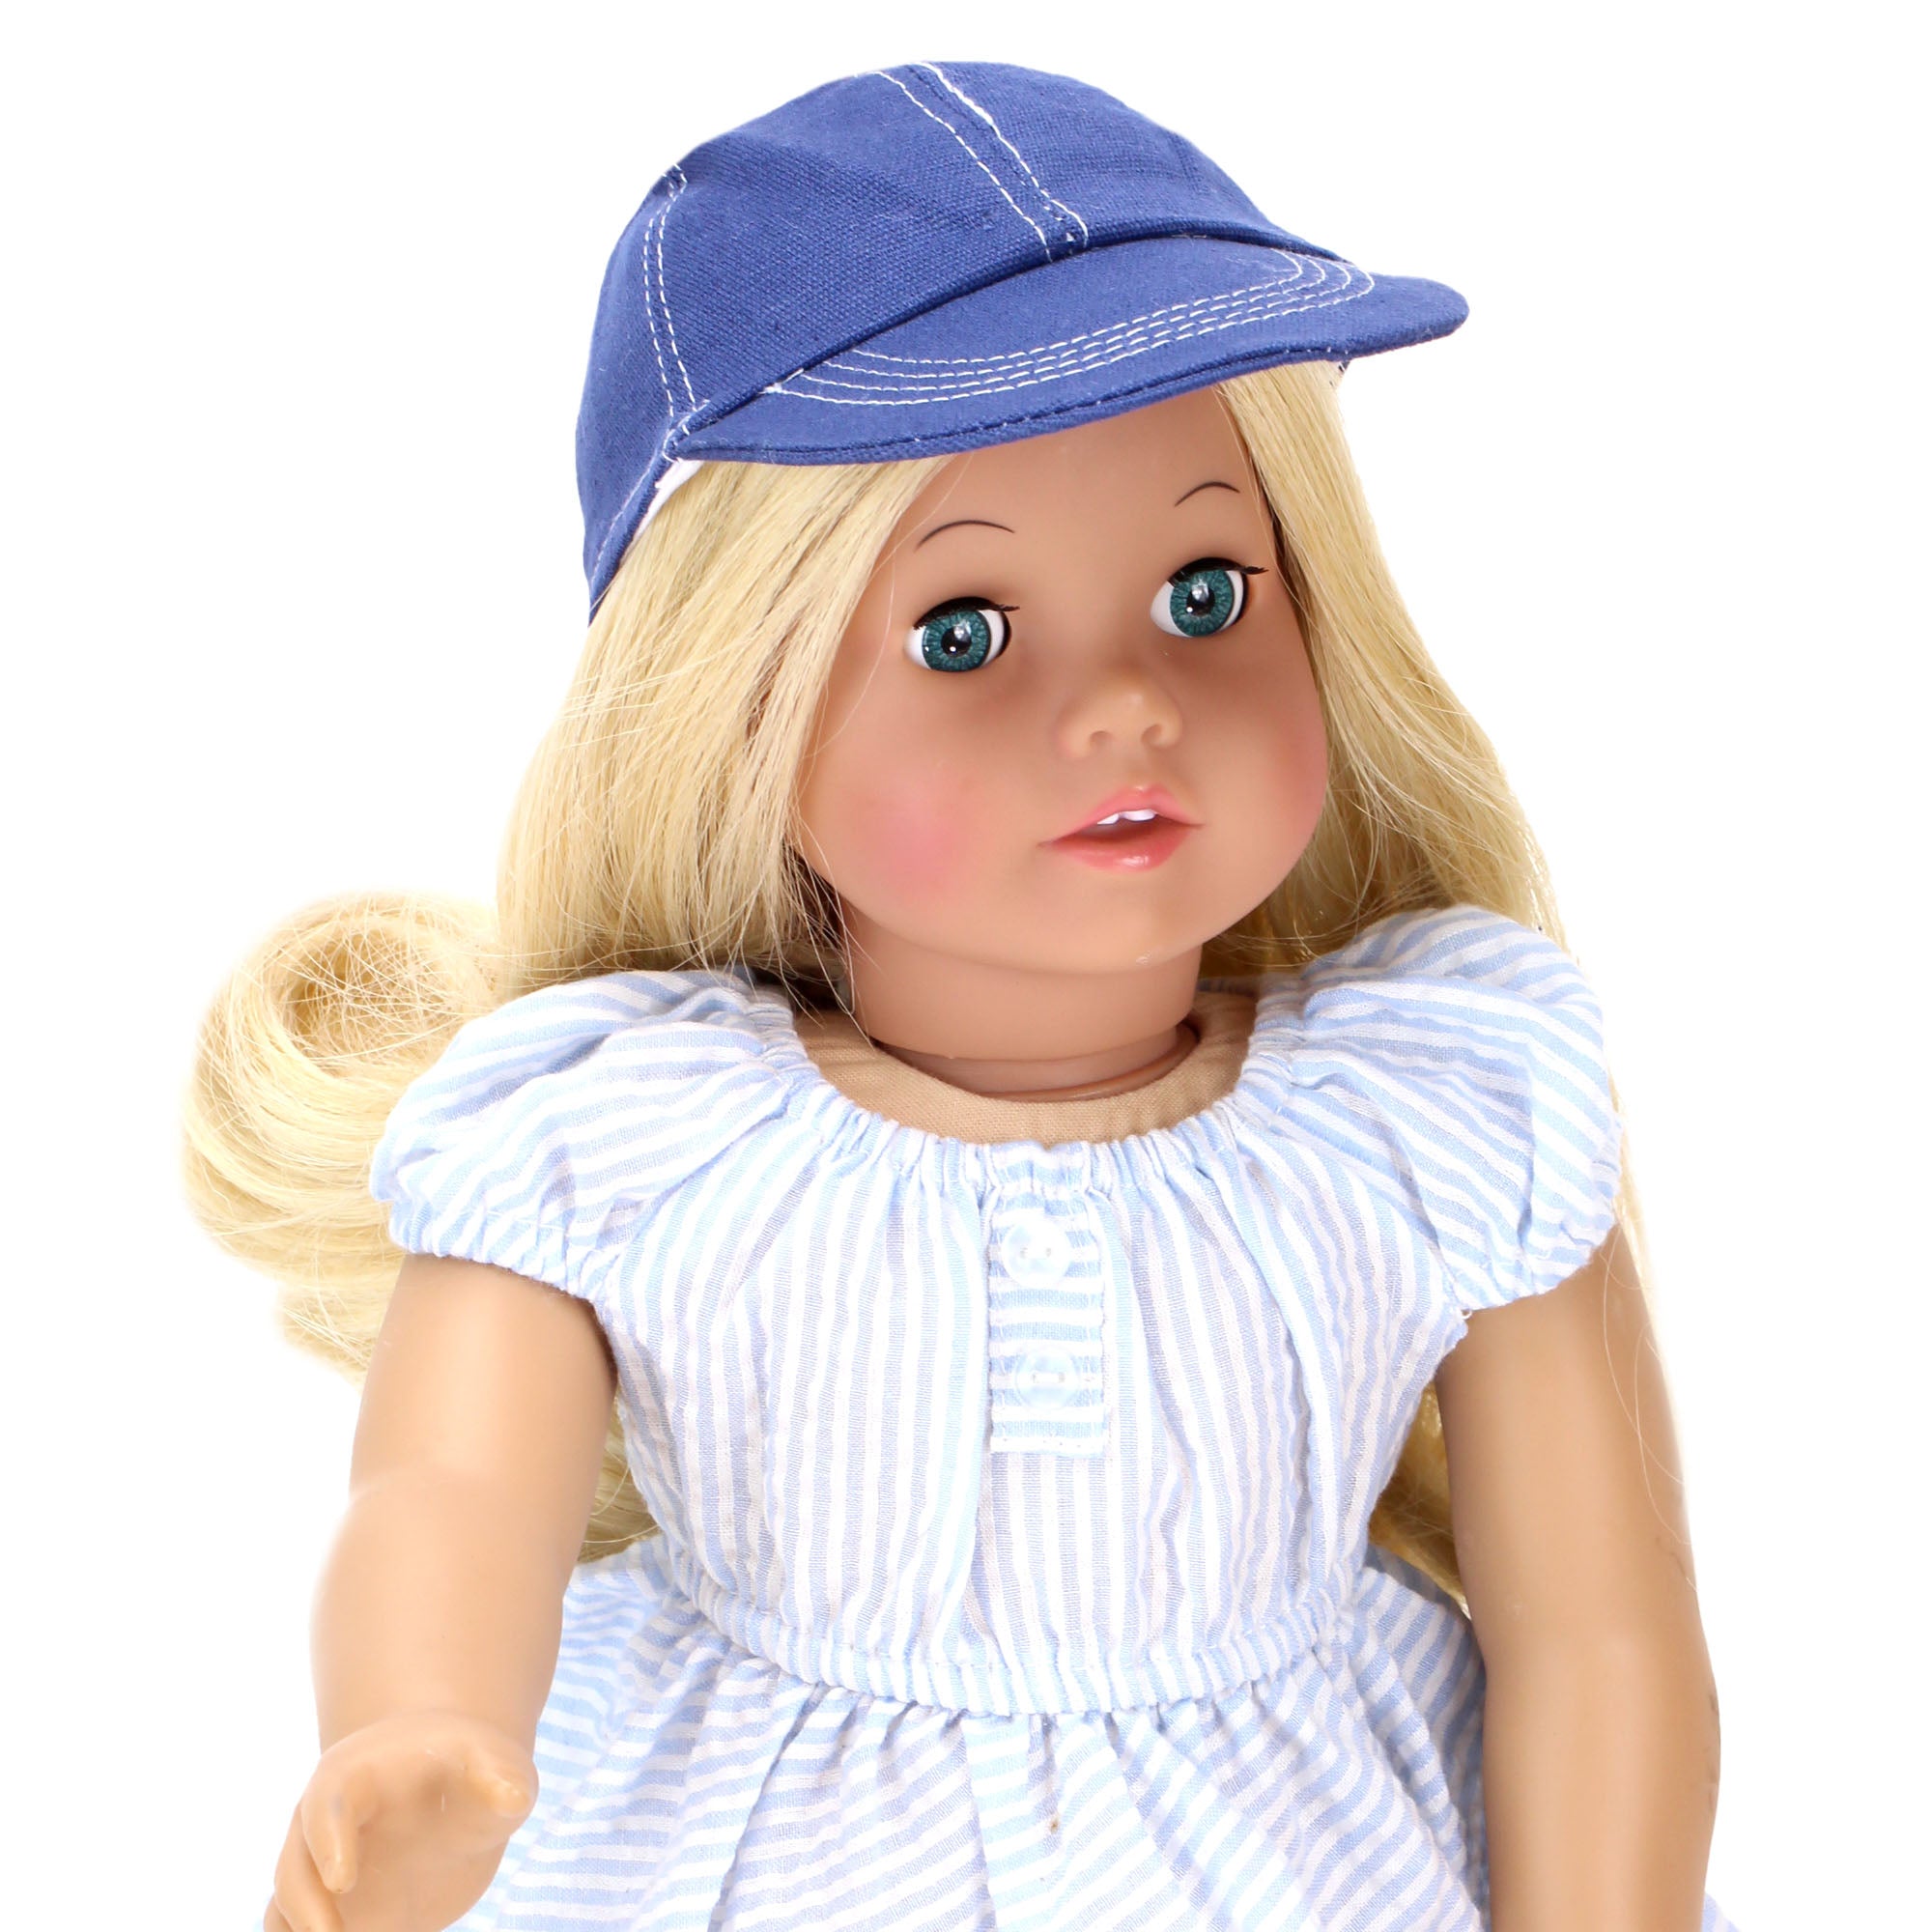 Sophia's Baseball Cap for 18 Inch Boy or Girl Dolls, Navy